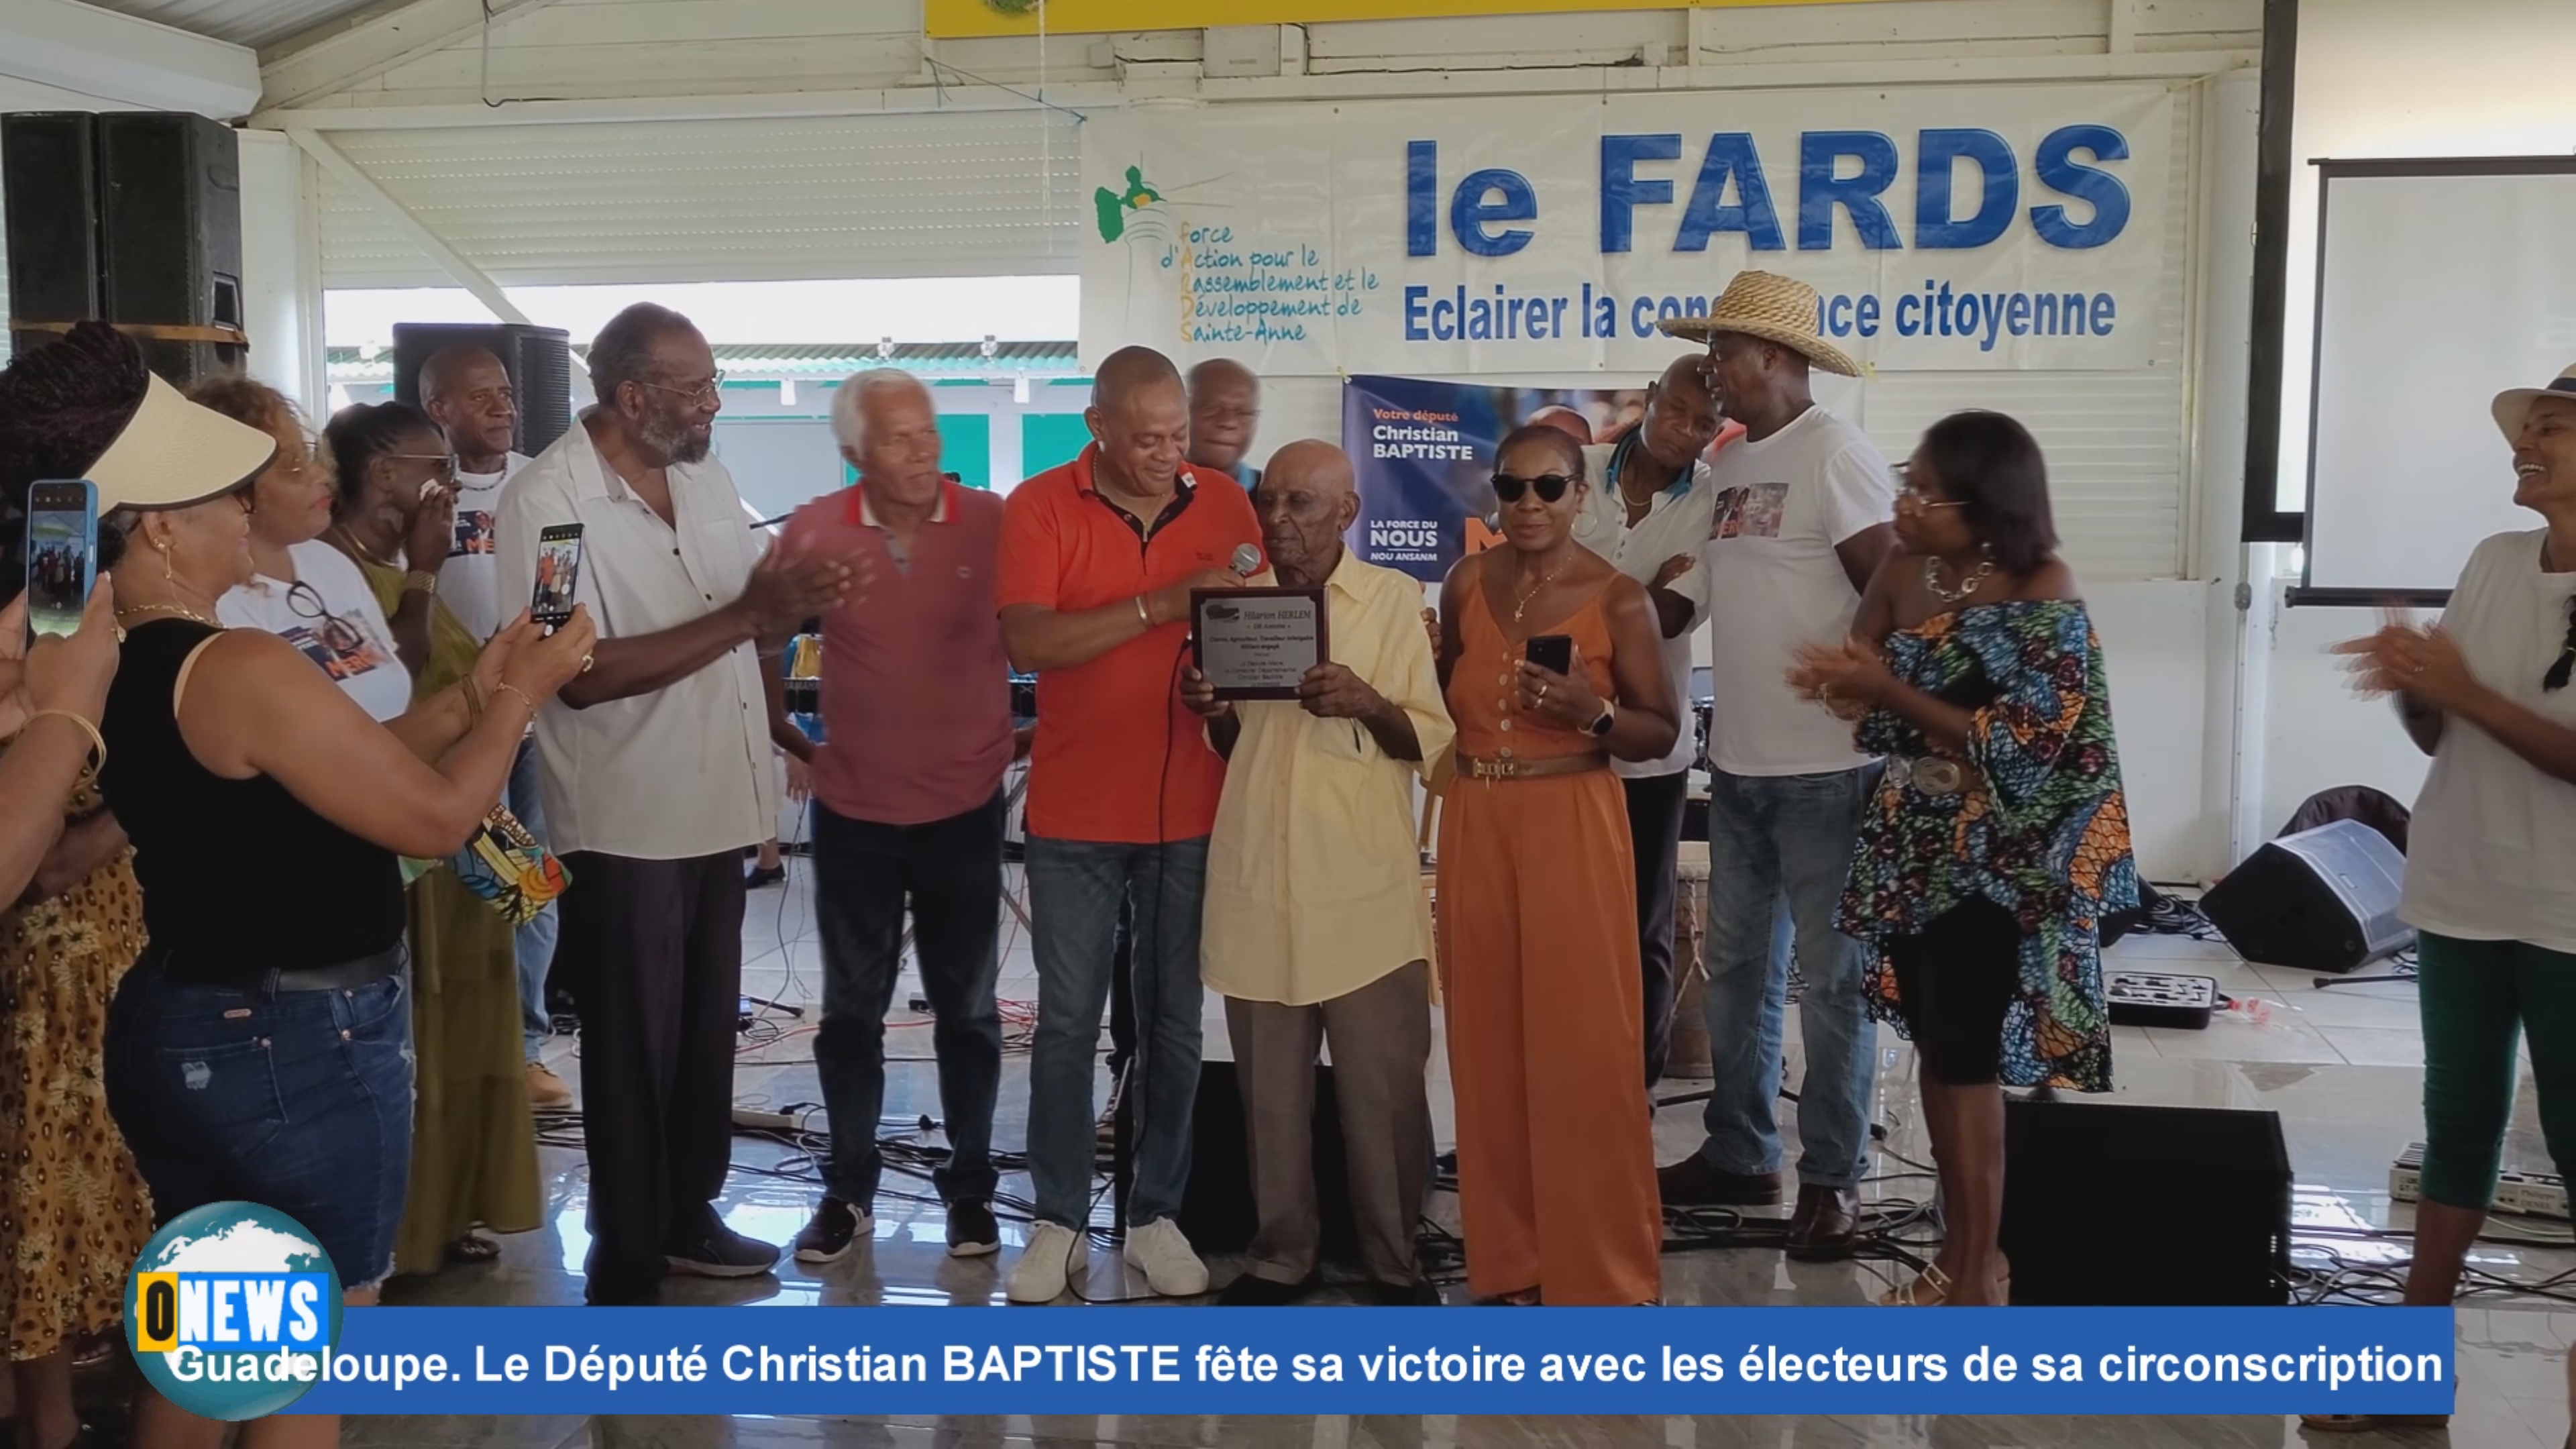 [Vidéo] Onews Guadeloupe. Le député Christian BAPTISTE fête sa victoire avec les électeurs de sa circonscription